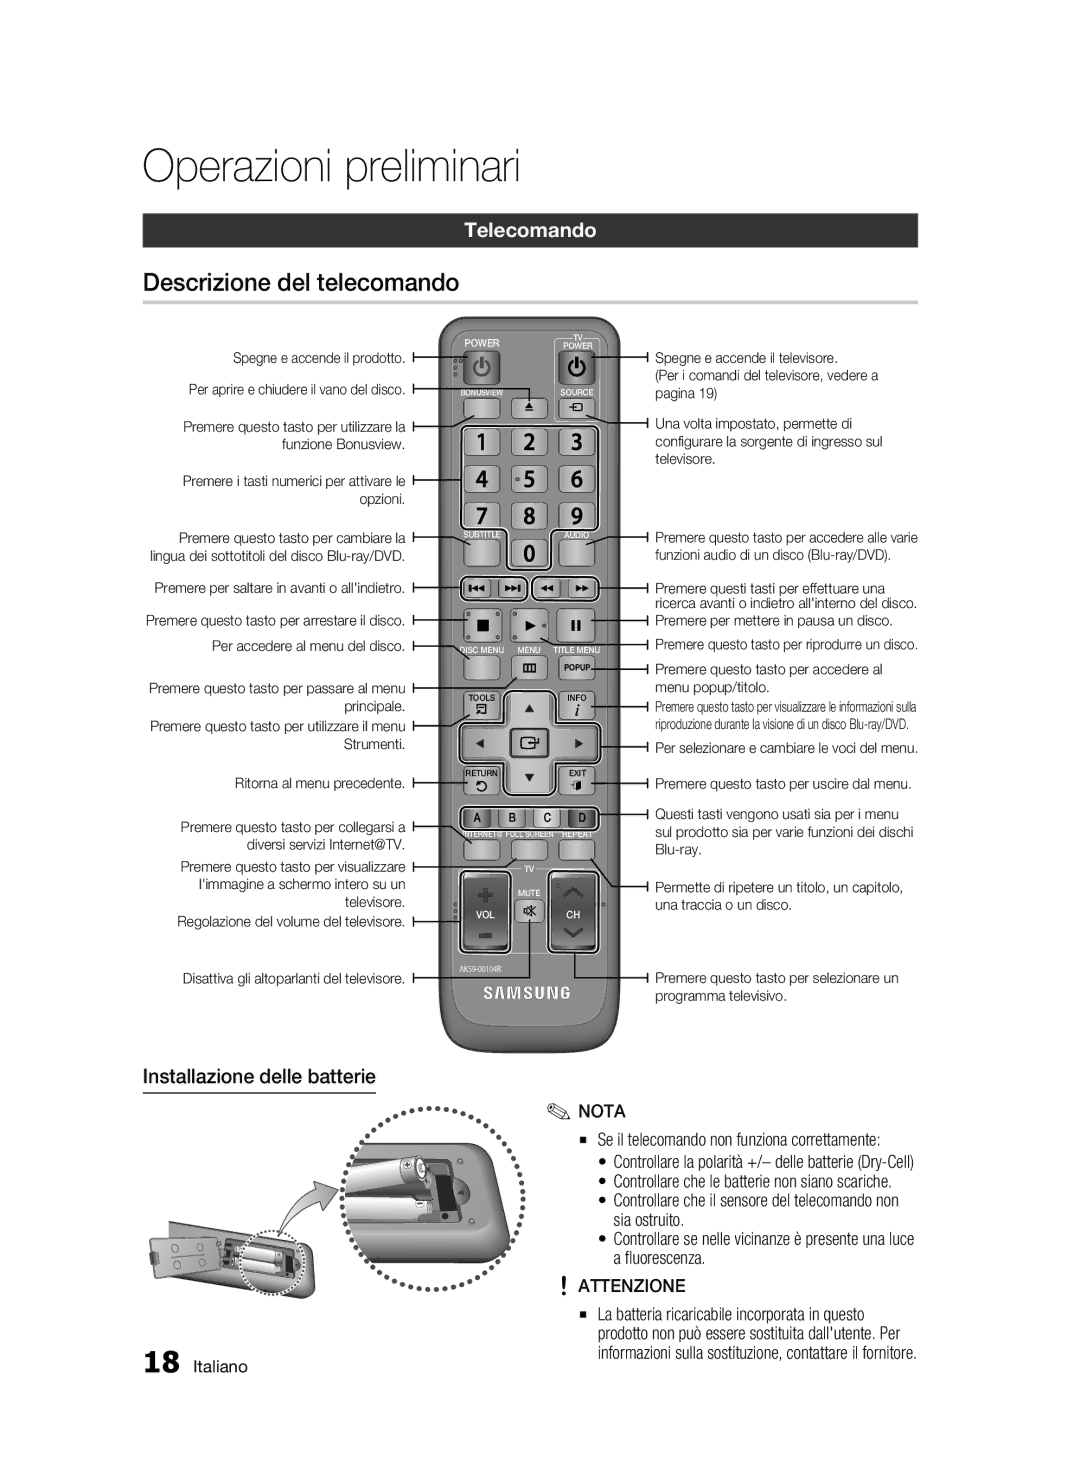 Samsung BD-C7500/XEF, BD-C7500/EDC manual Descrizione del telecomando, Telecomando, Installazione delle batterie, Attenzione 